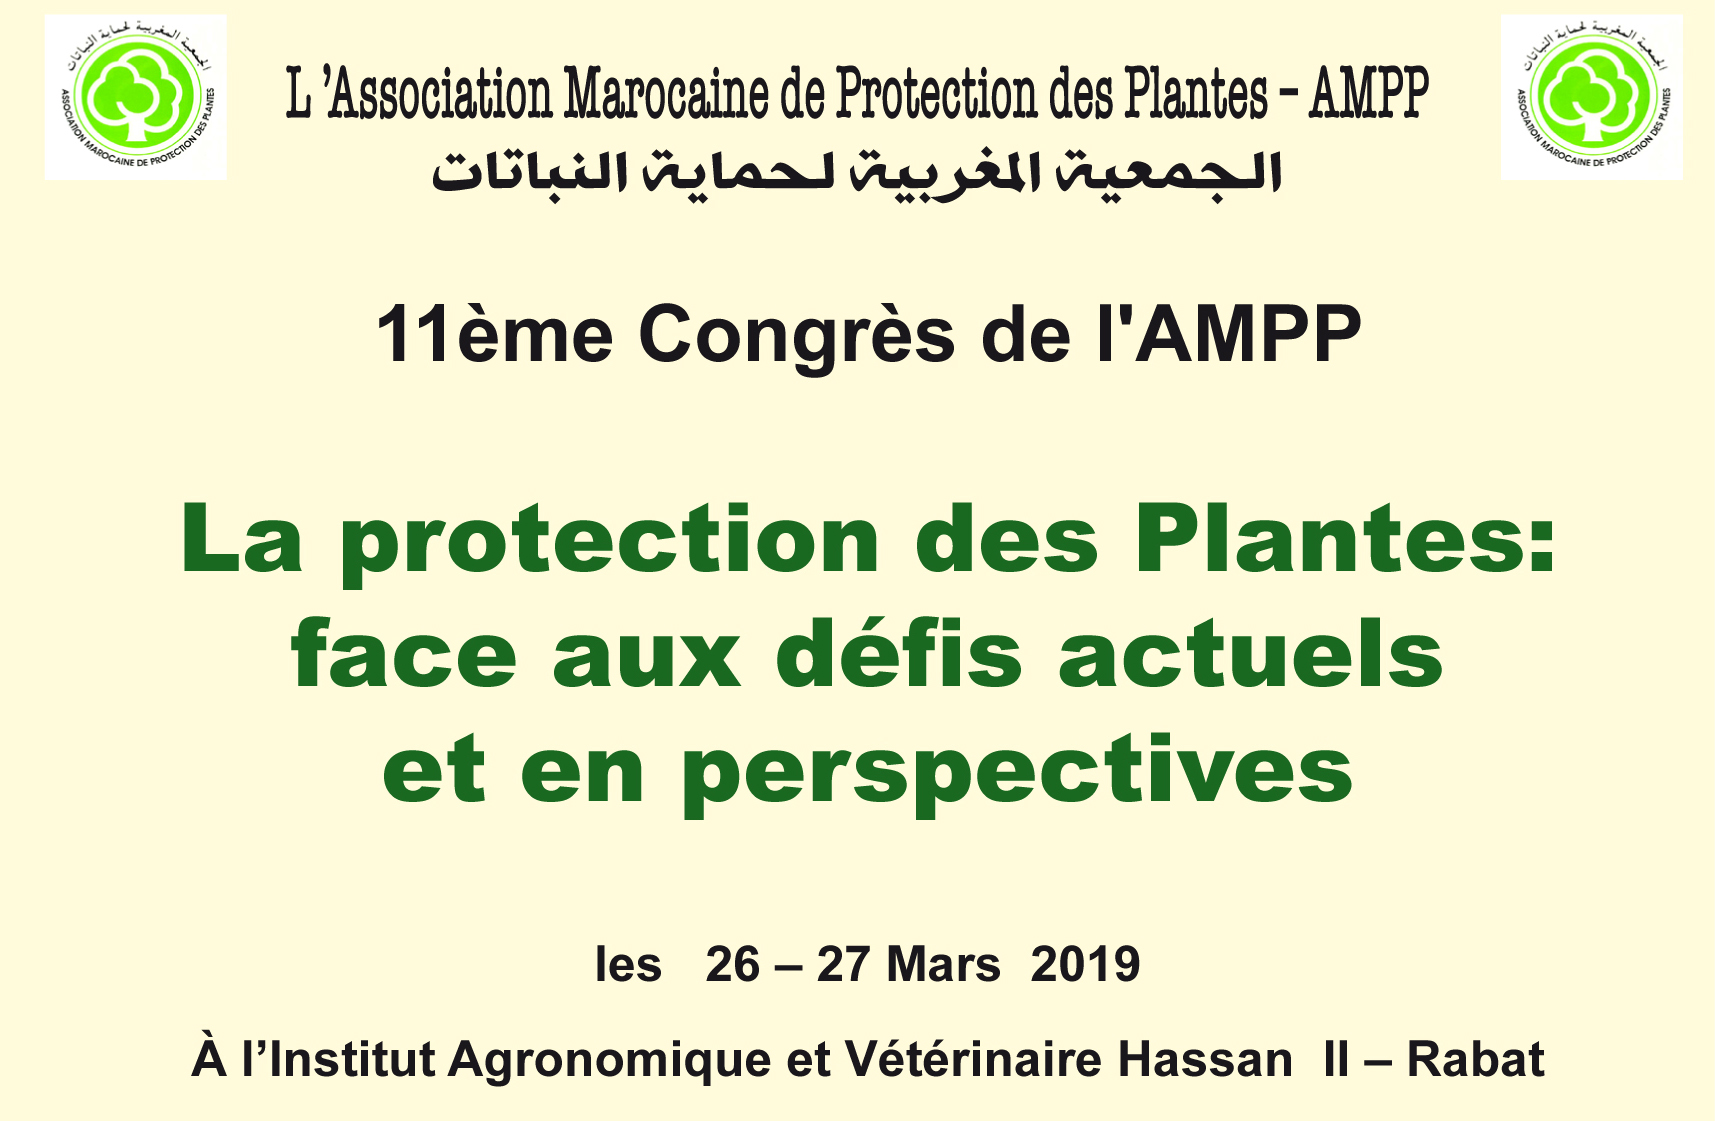 Congrès de l’AMPP: La protection des plantes face aux défis actuels et en perspective